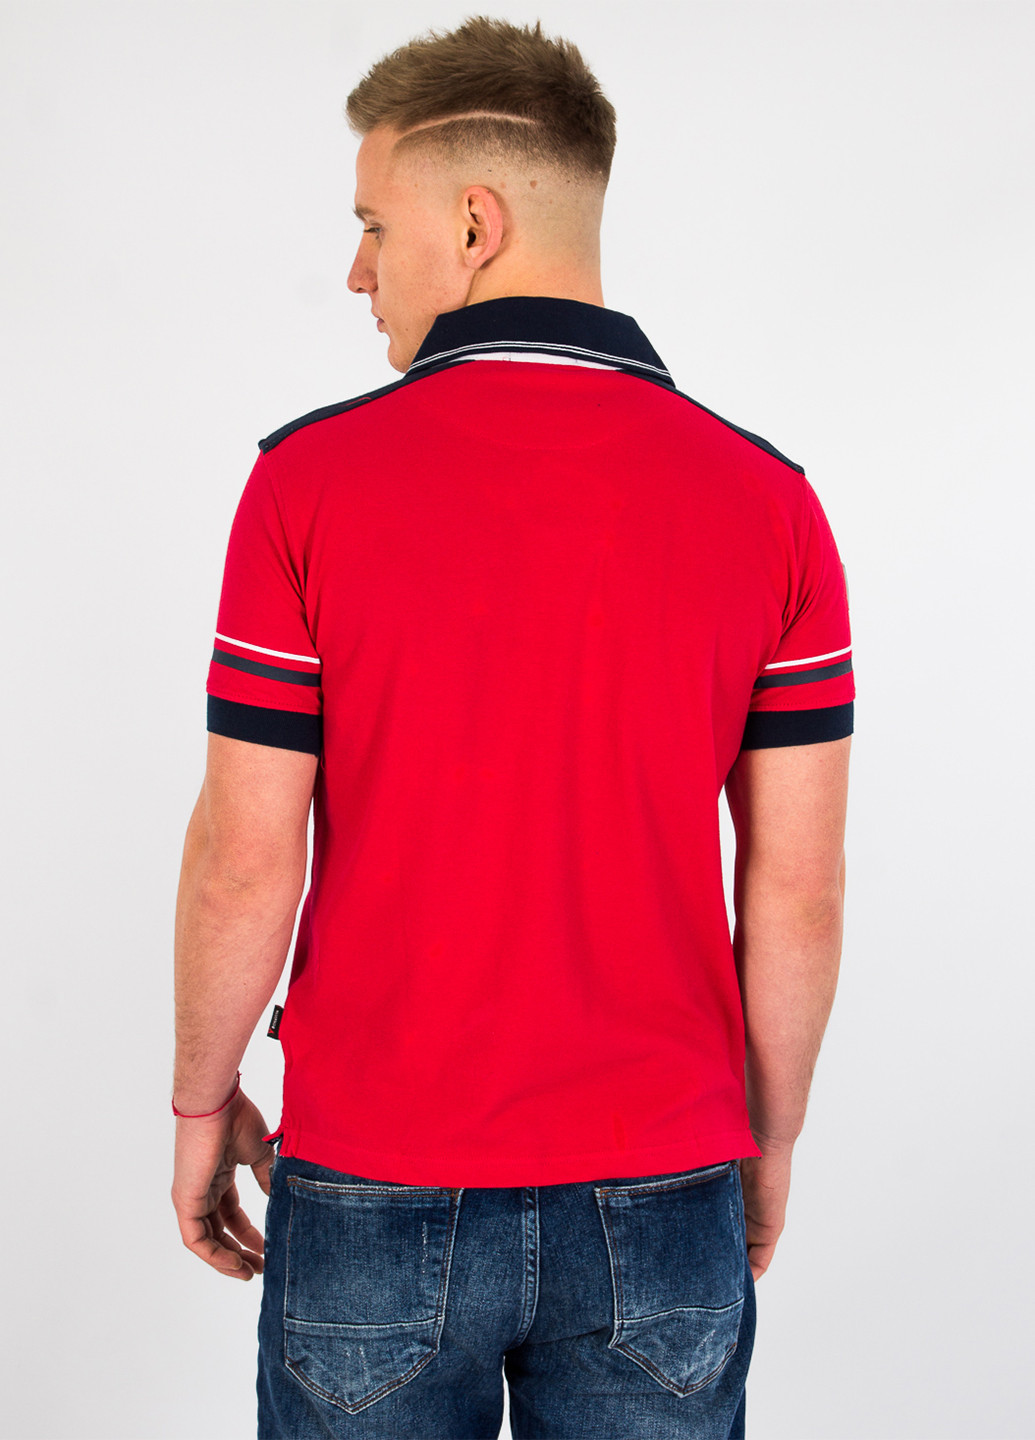 Красная футболка-поло для мужчин Bonavita с надписью